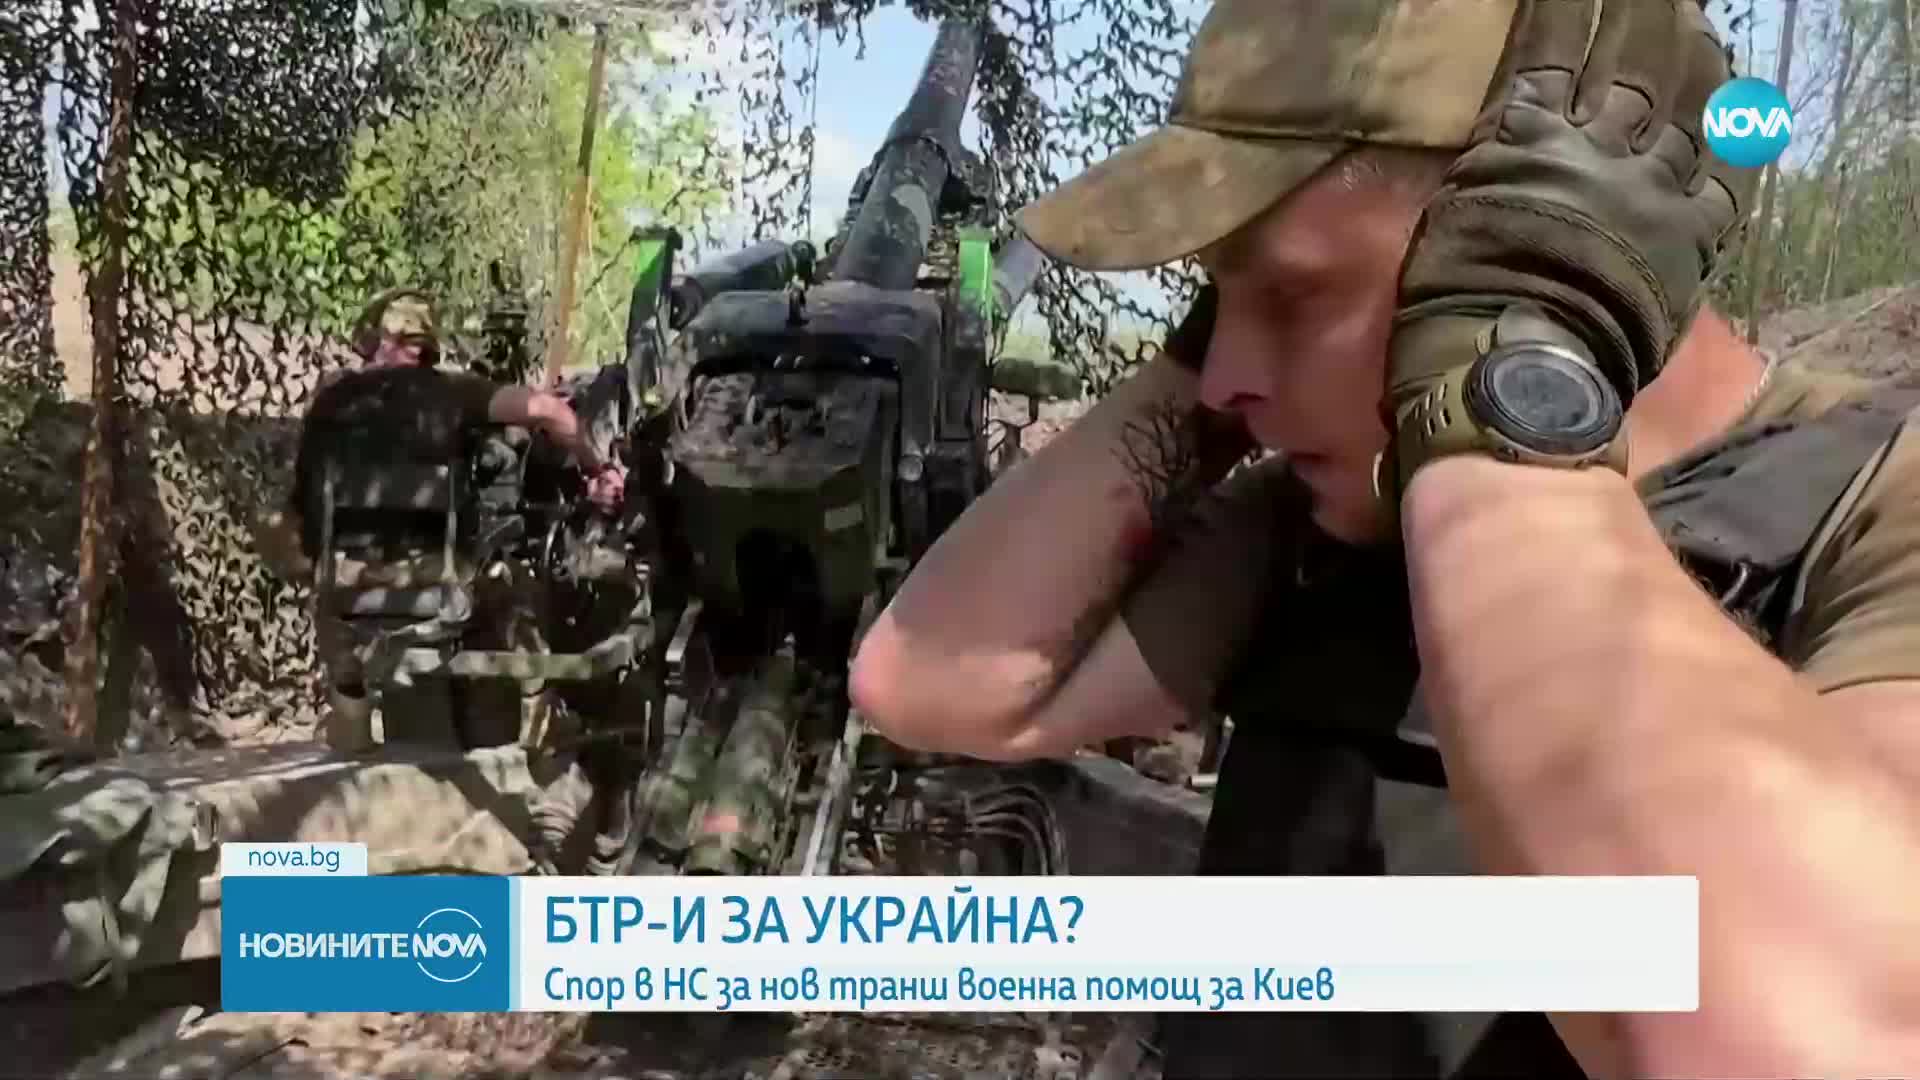 БТР-И ЗА УКРАЙНА?: Спор в НС за нов транш военна помощ за Киев